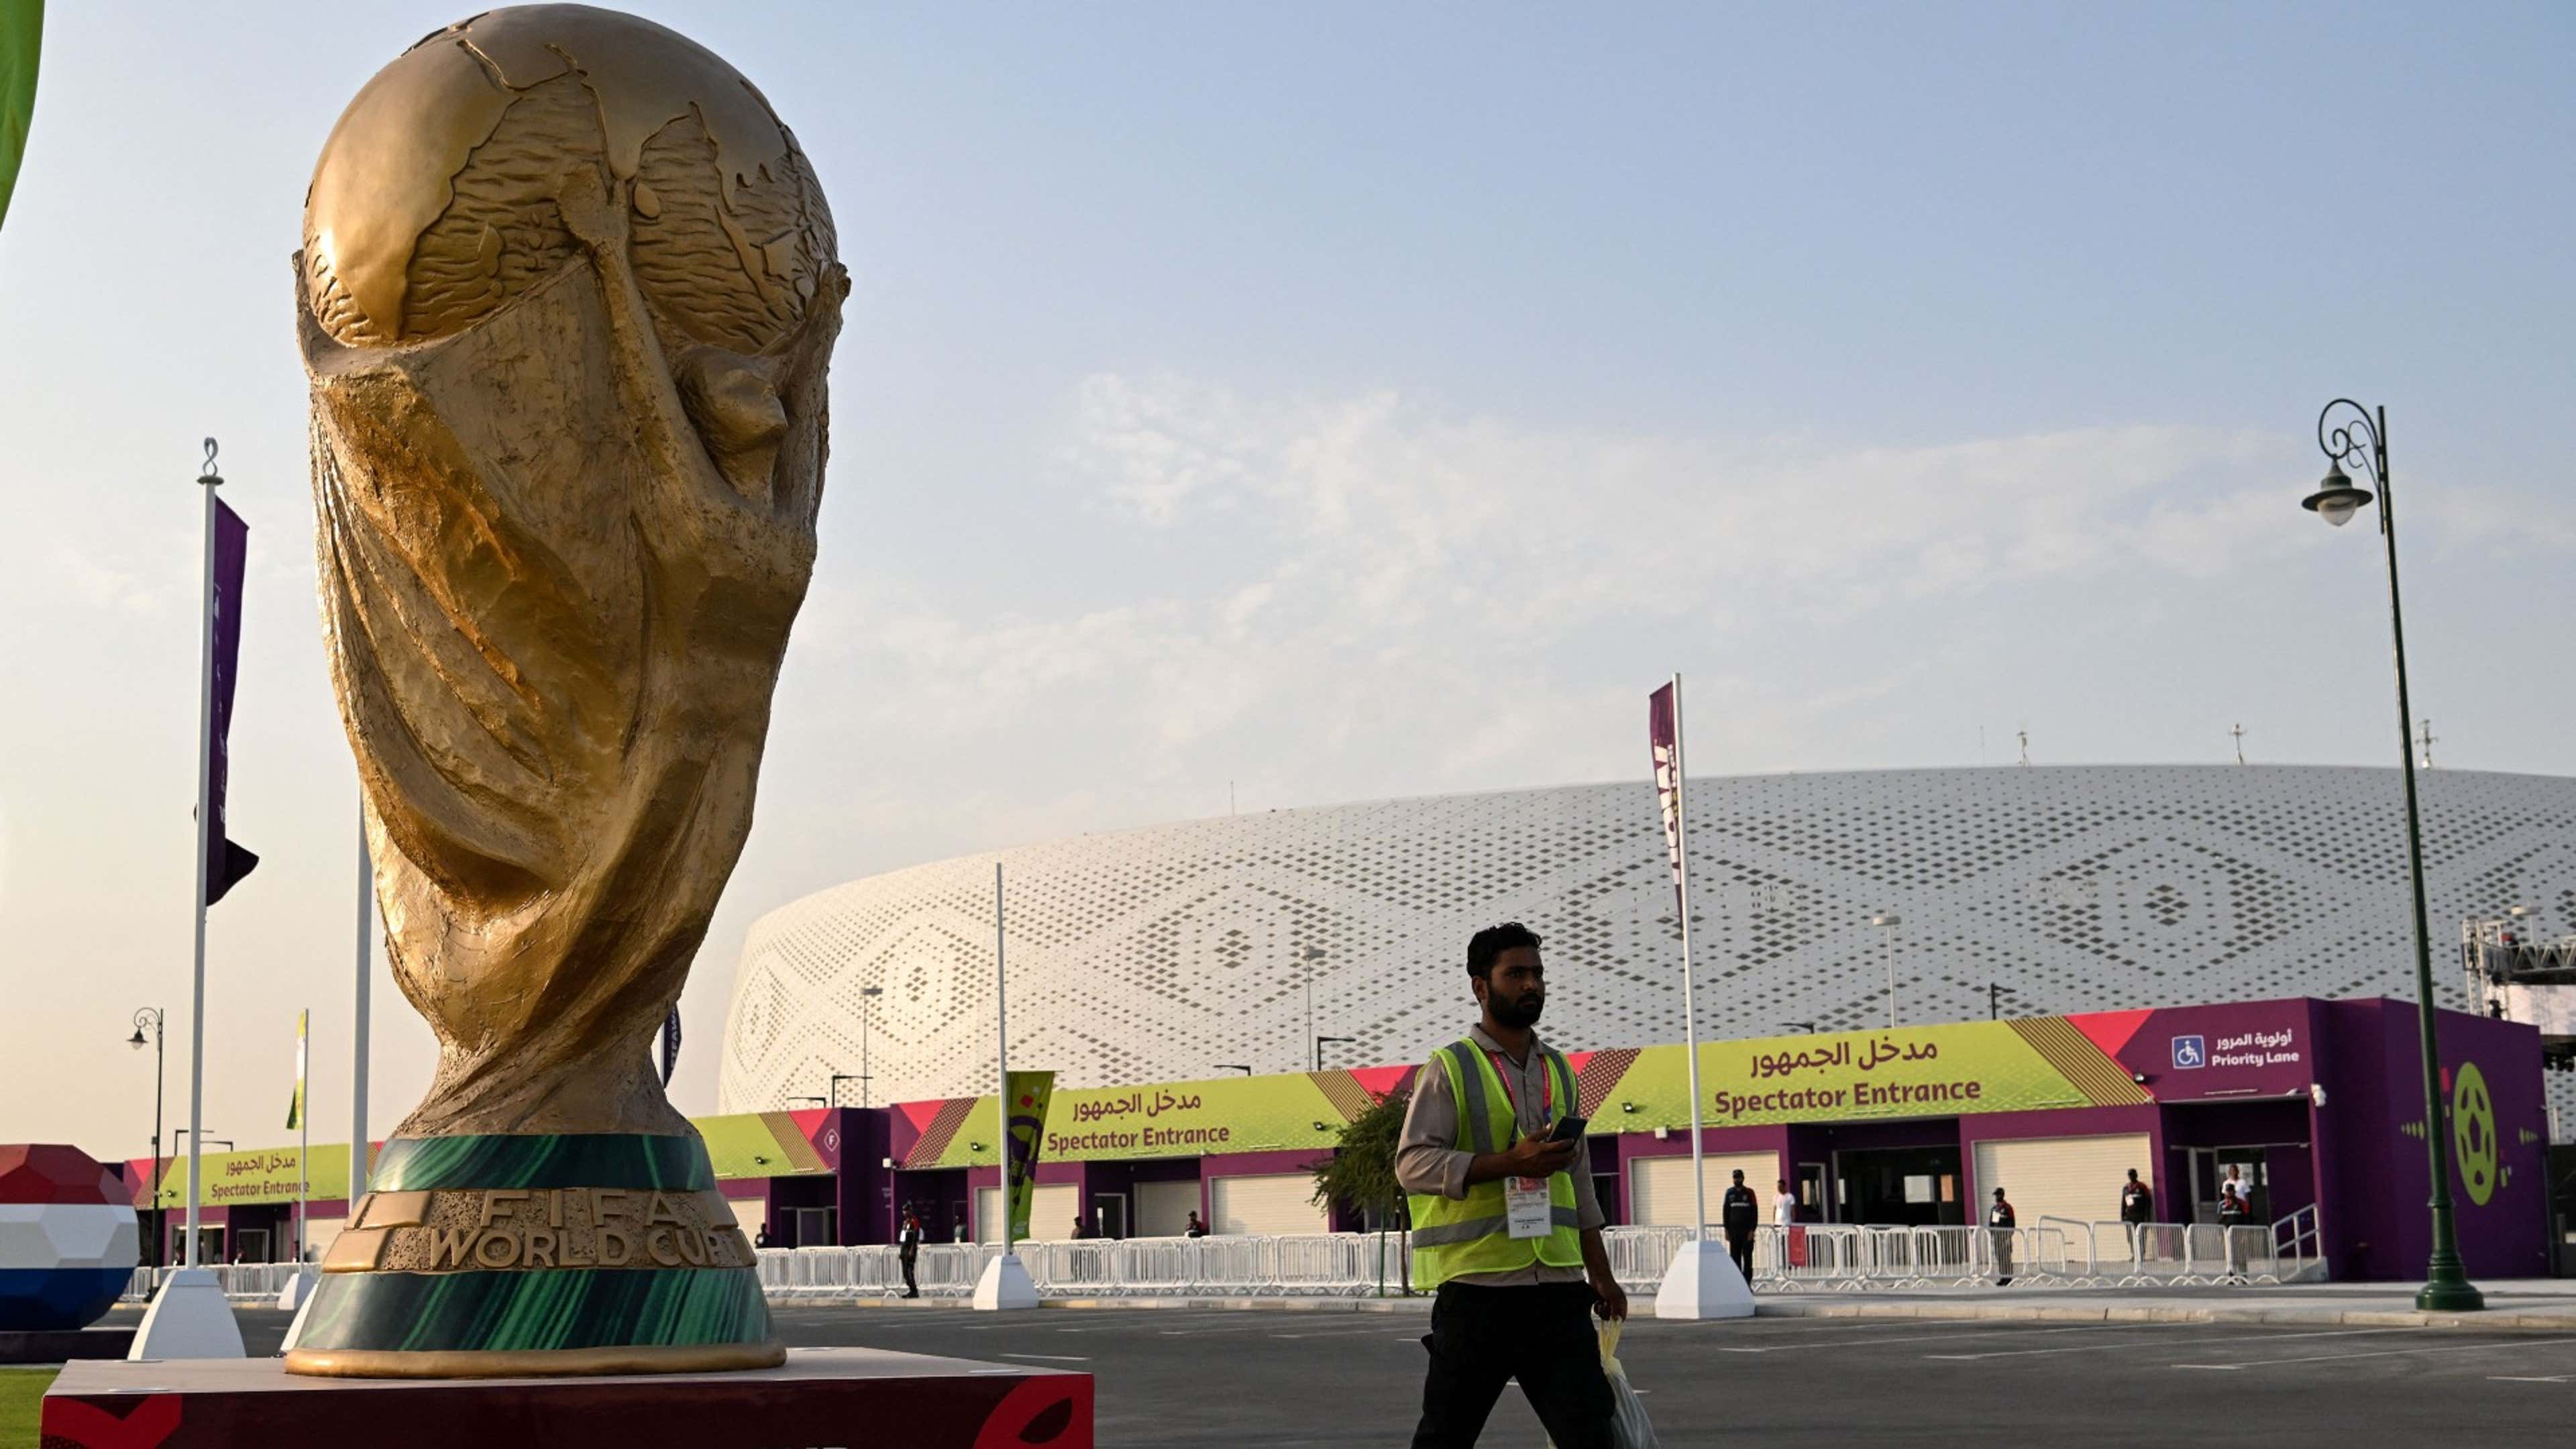 Tabela da Copa do Mundo 2022: jogos, datas e resultados do torneio no Qatar